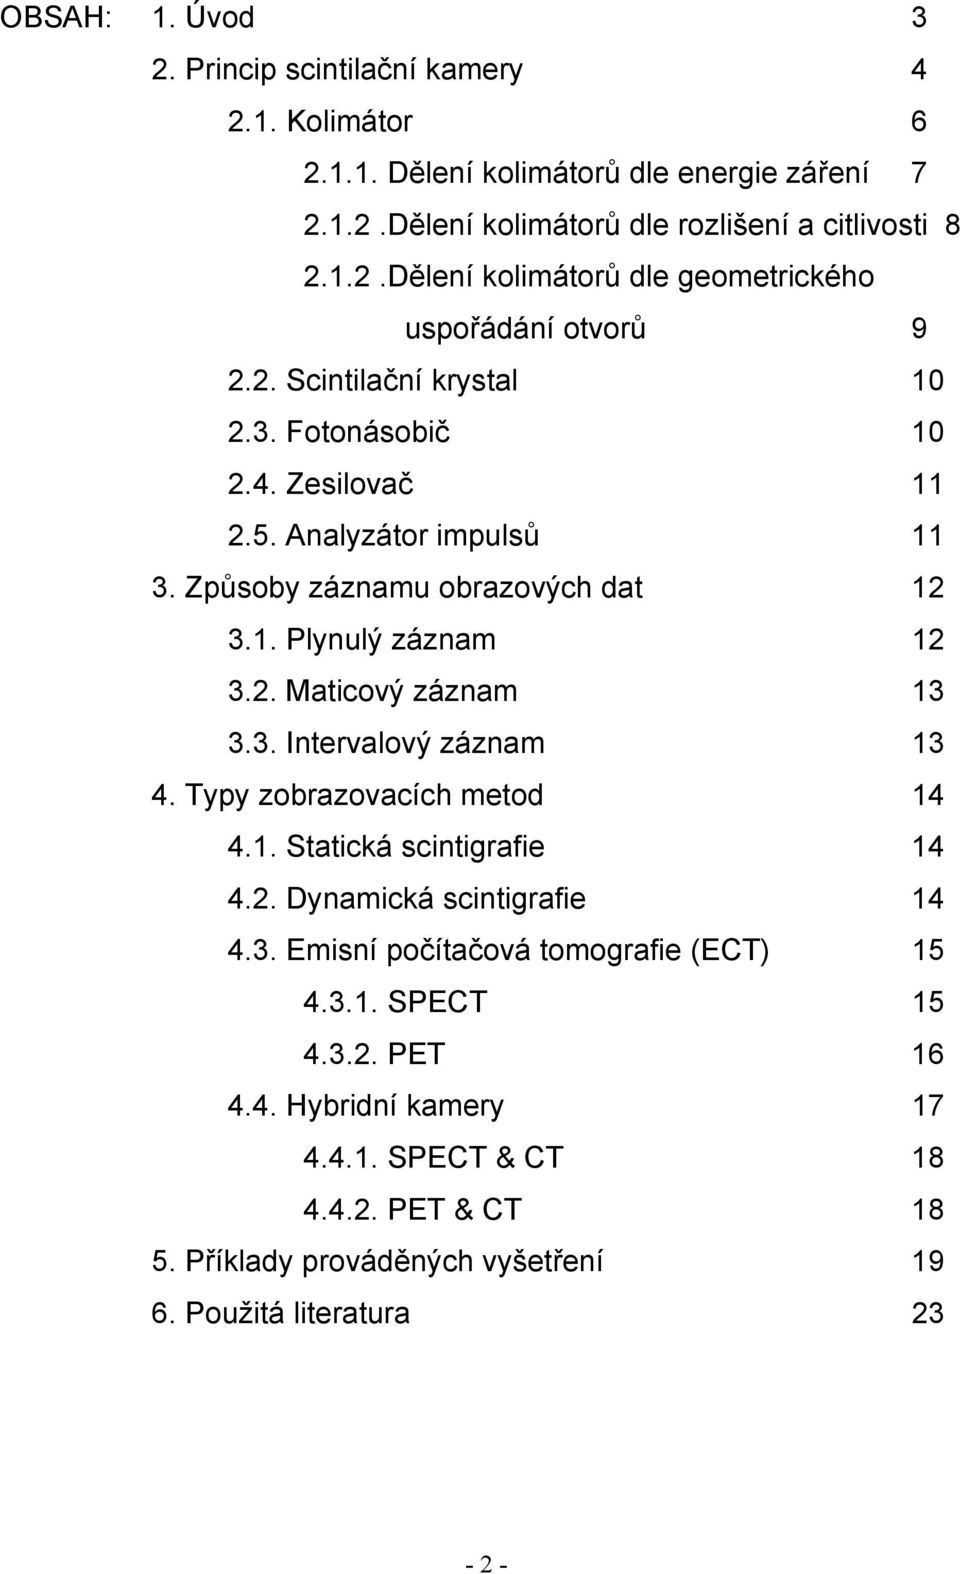 Typy zobrazovacích metod 14 4.1. Statická scintigrafie 14 4.2. Dynamická scintigrafie 14 4.3. Emisní počítačová tomografie (ECT) 15 4.3.1. SPECT 15 4.3.2. PET 16 4.4. Hybridní kamery 17 4.